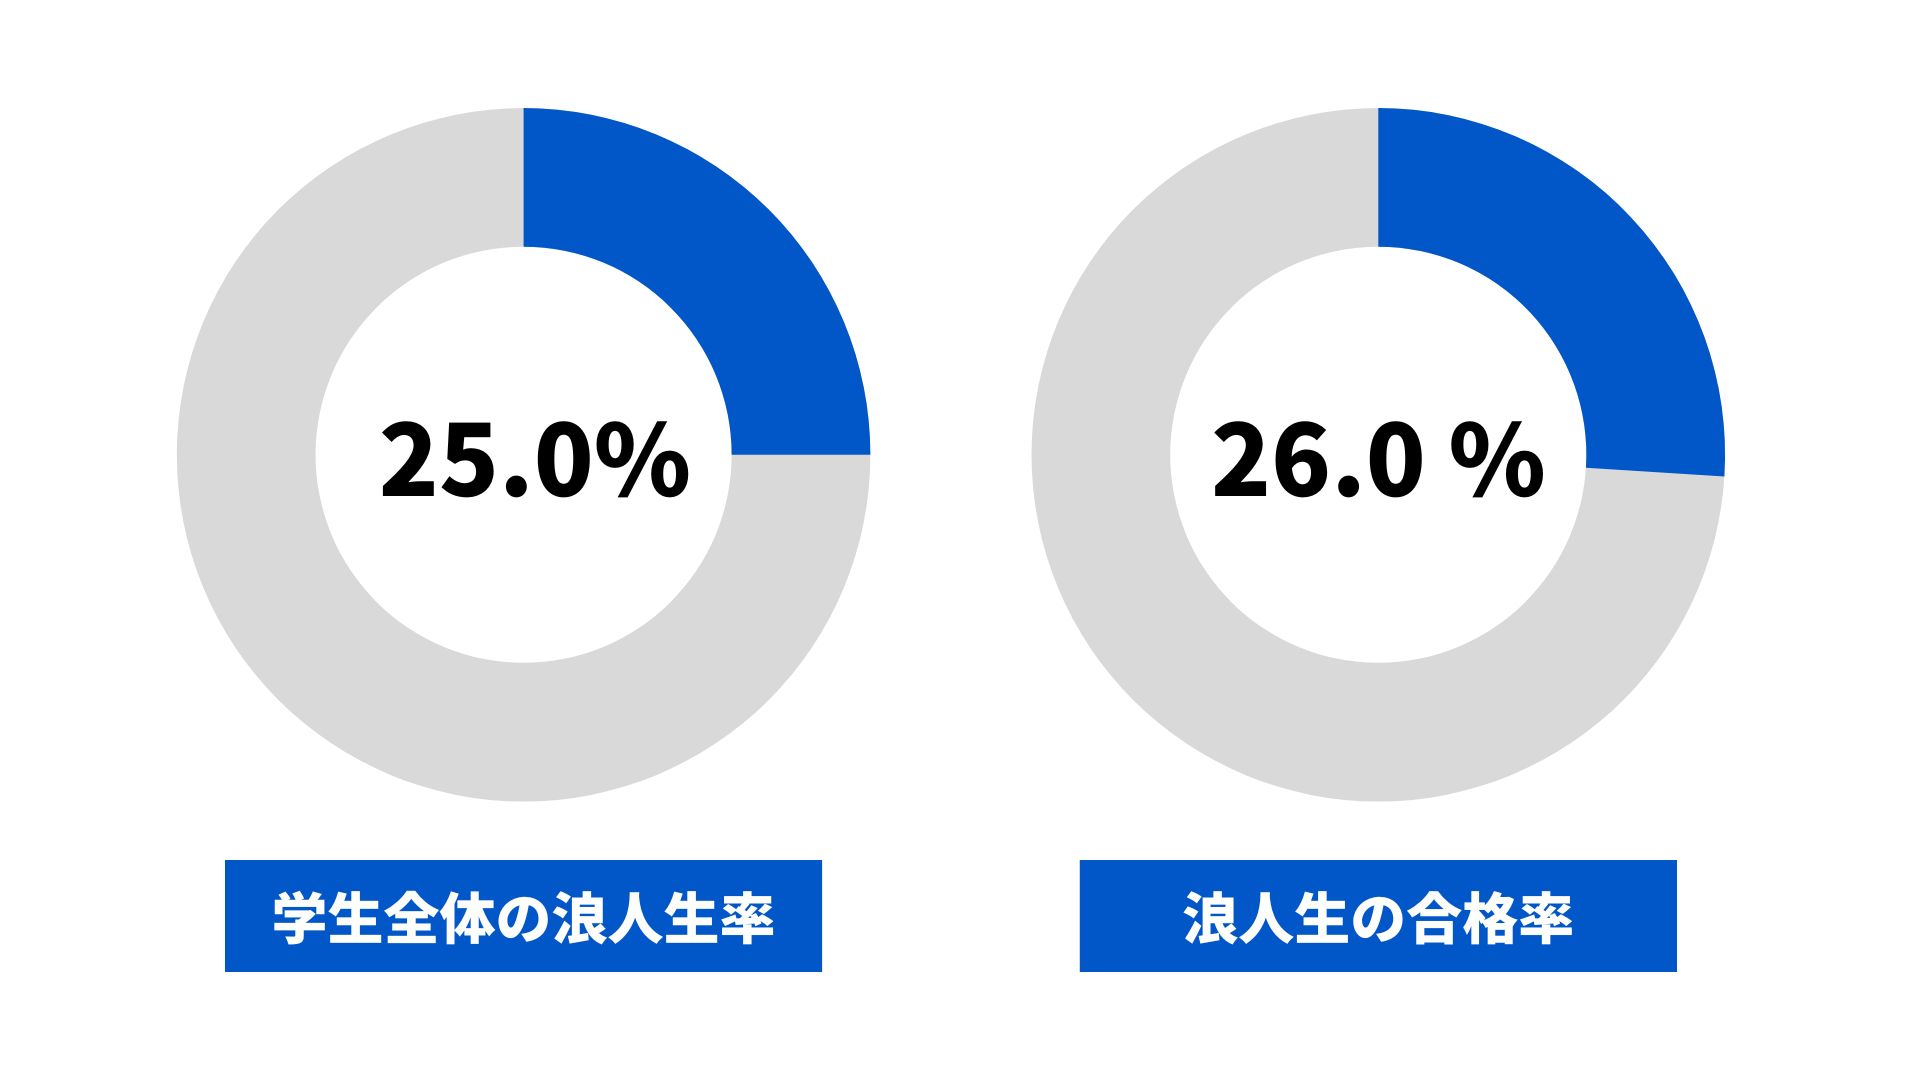 神戸大学の浪人生の割合